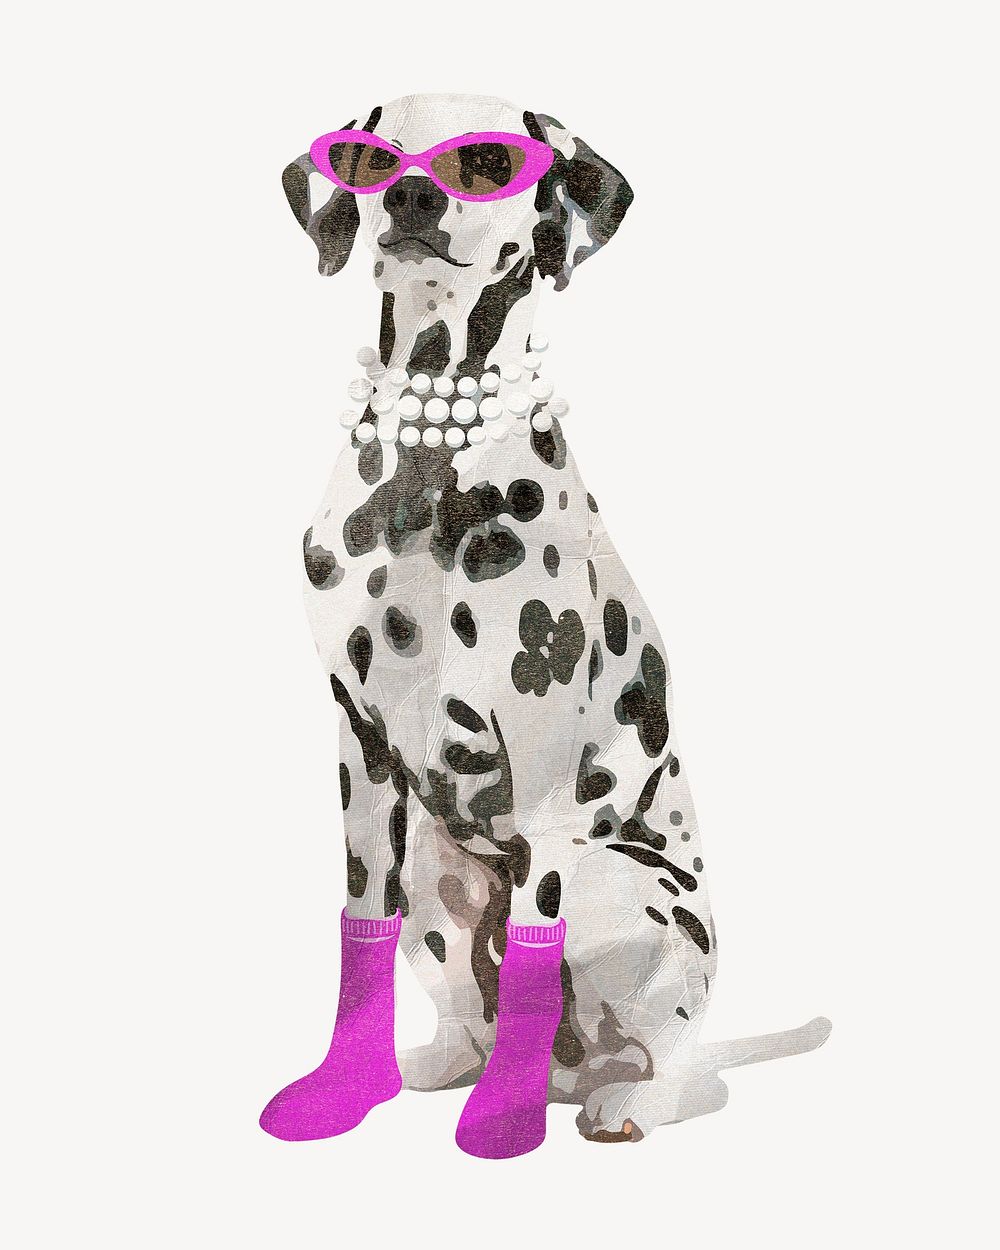 Fashionable Dalmatian dog, pet animal element